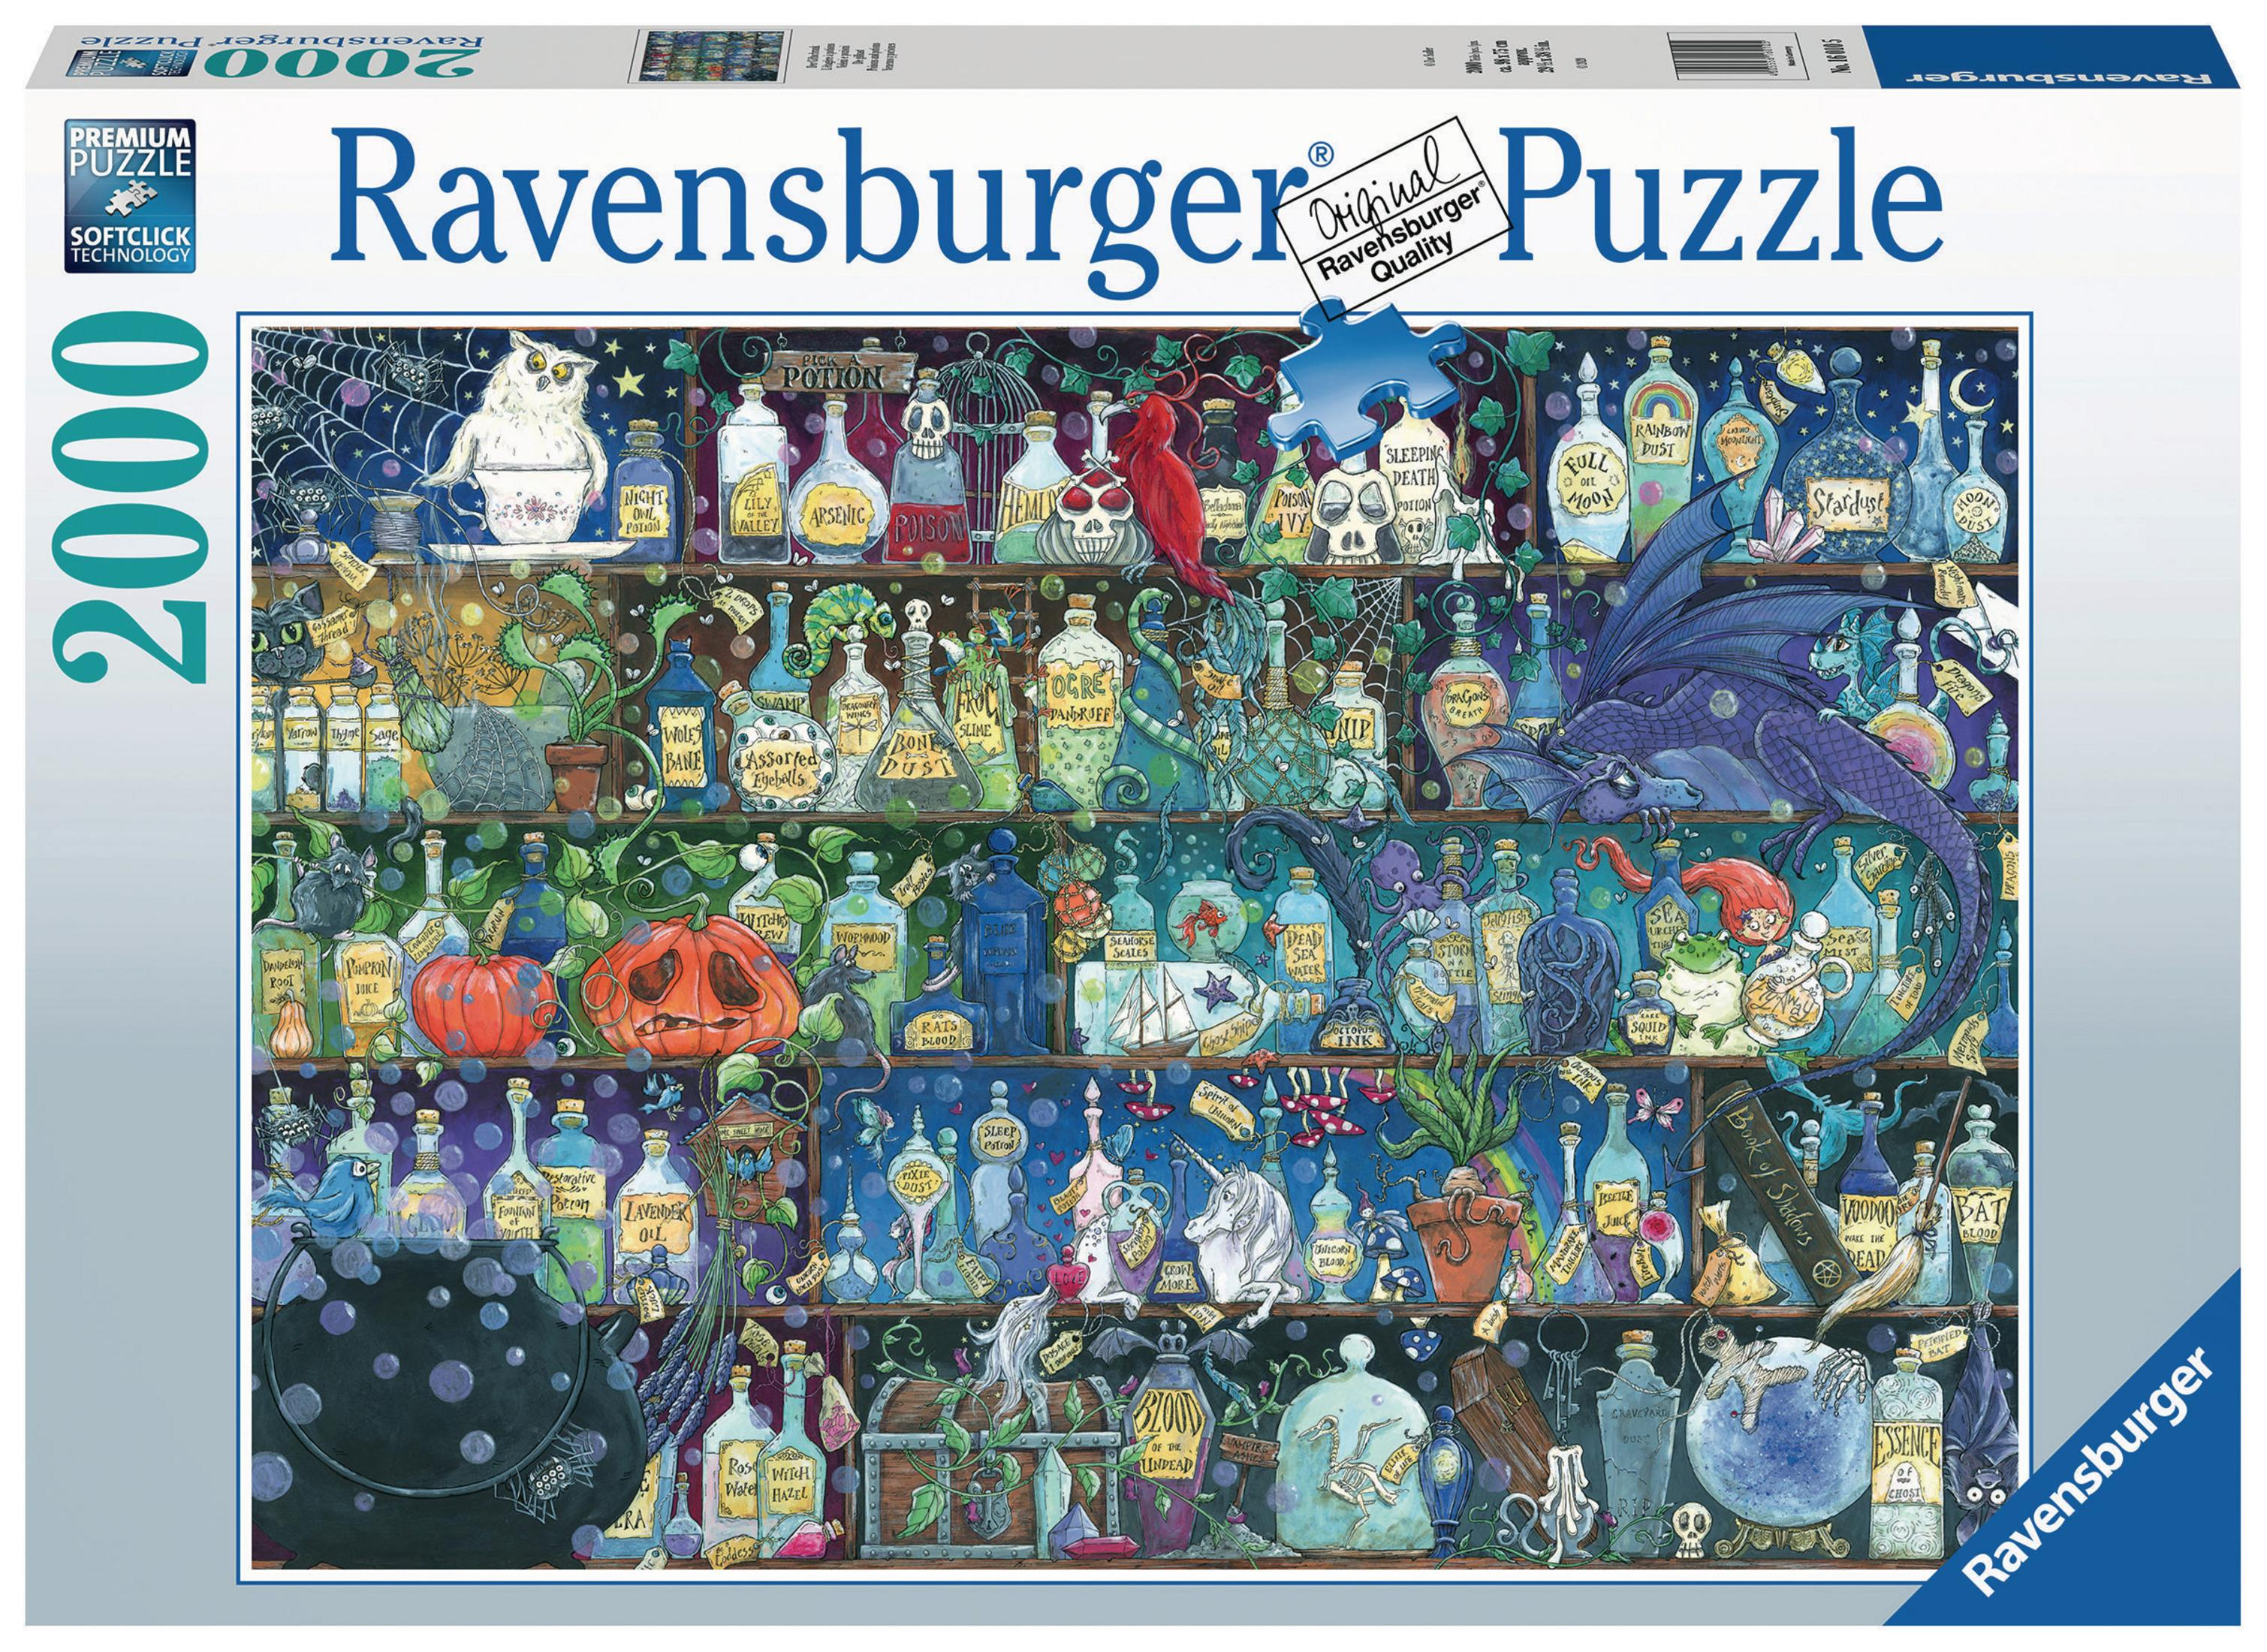 GIFTSCHRANK Puzzle RAVENSBURGER DER 16010